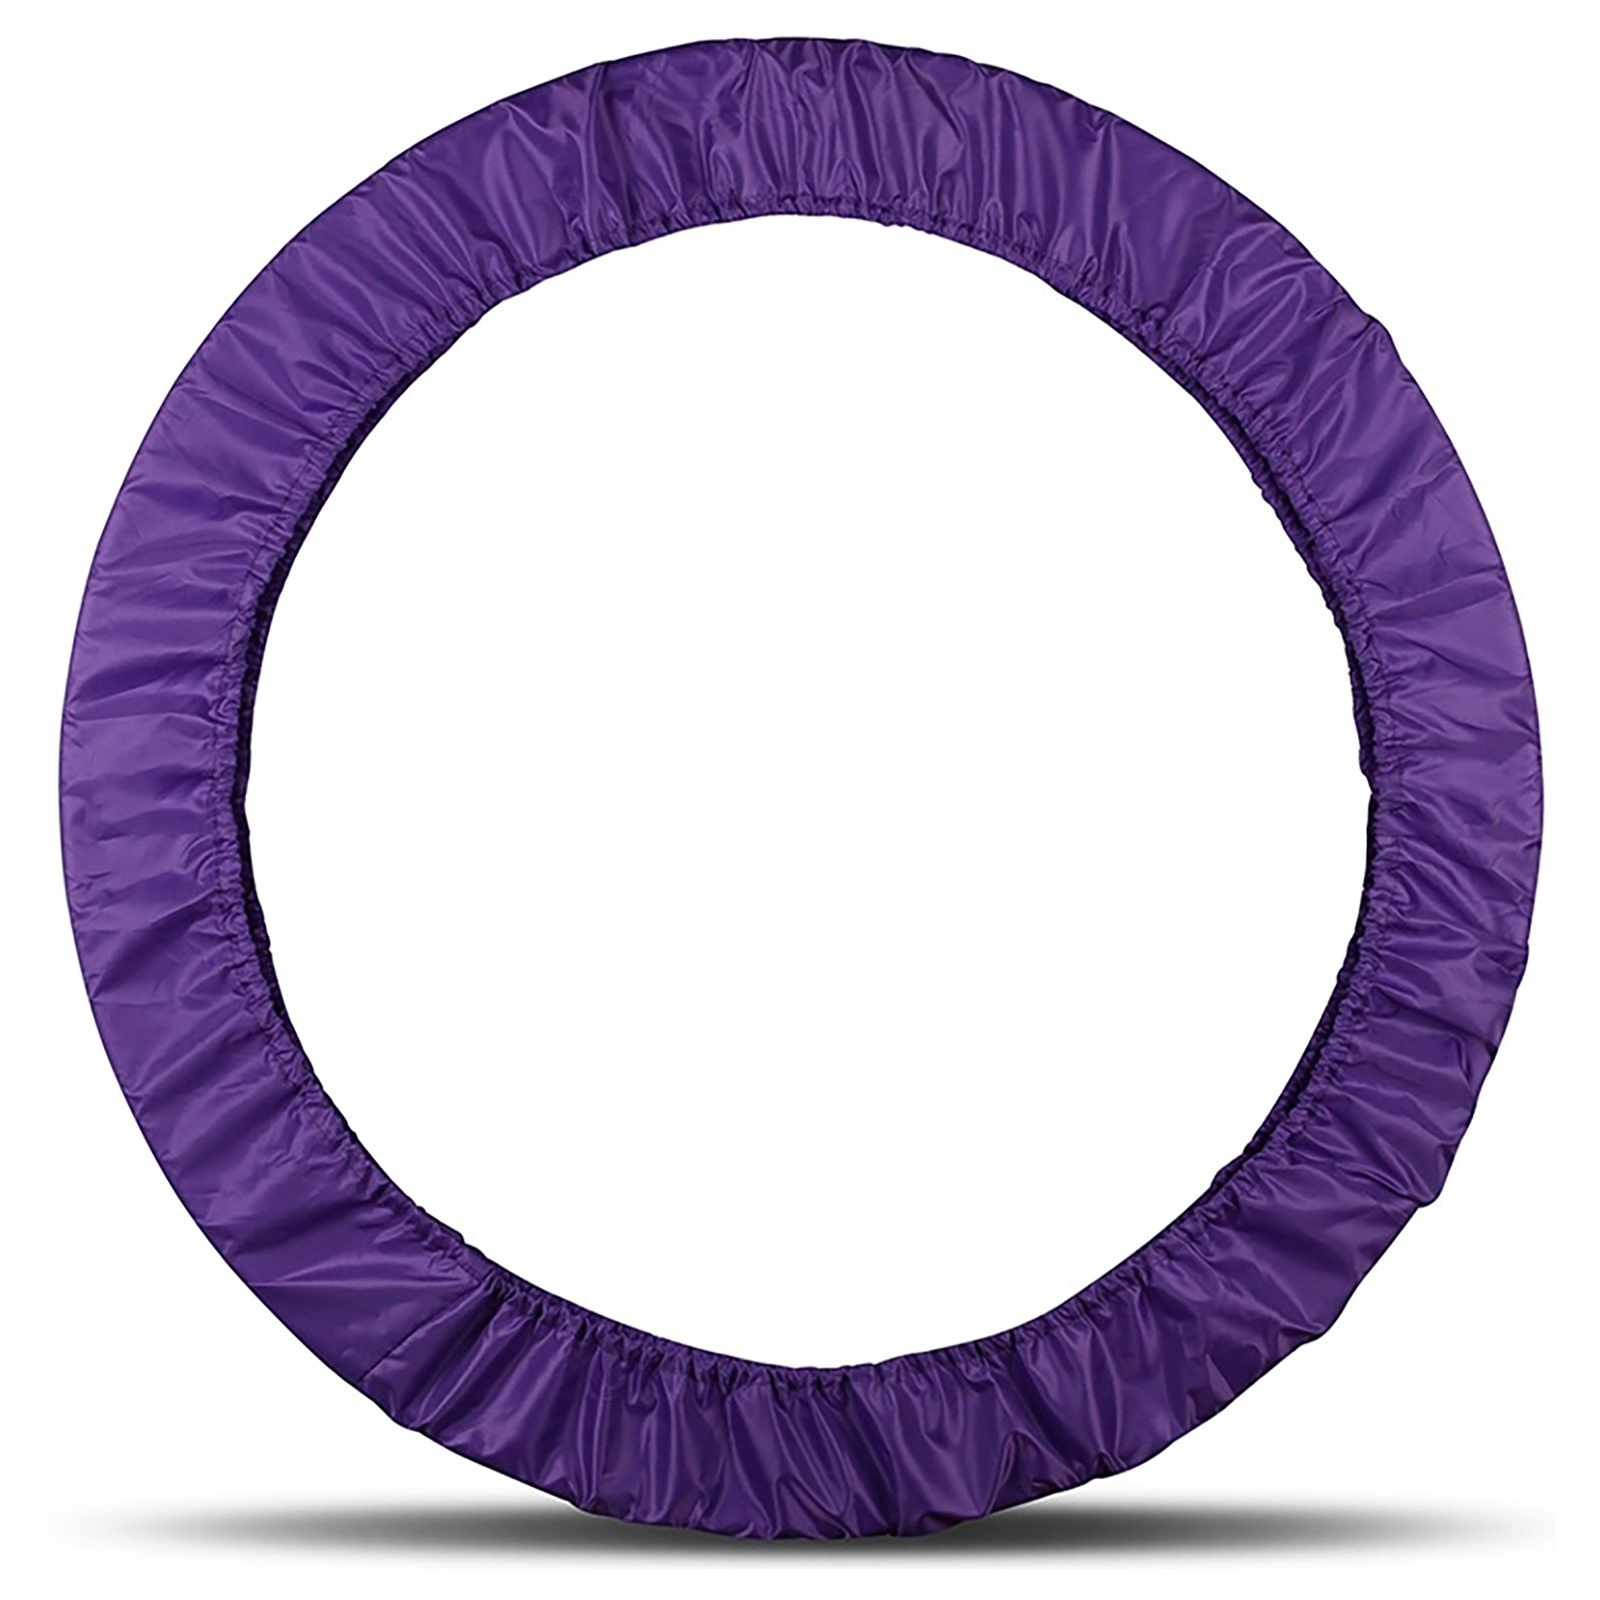 Чехол Grace Dance для обруча цвет Фиолетовый - фото 1